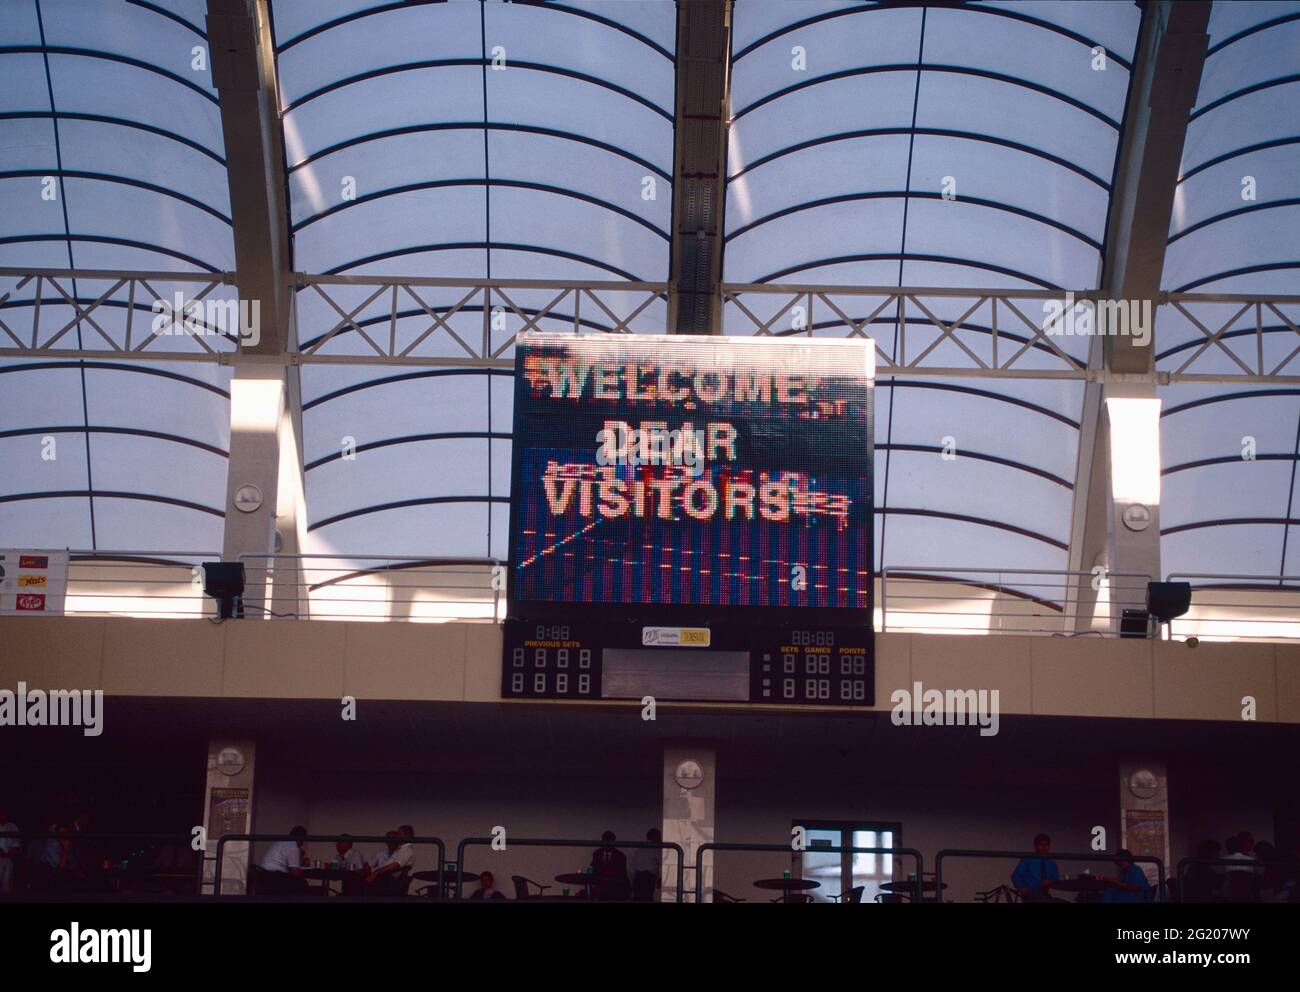 Im Inneren des Tennisstadions das Schild Willkommen Liebe Besucher Stockfoto